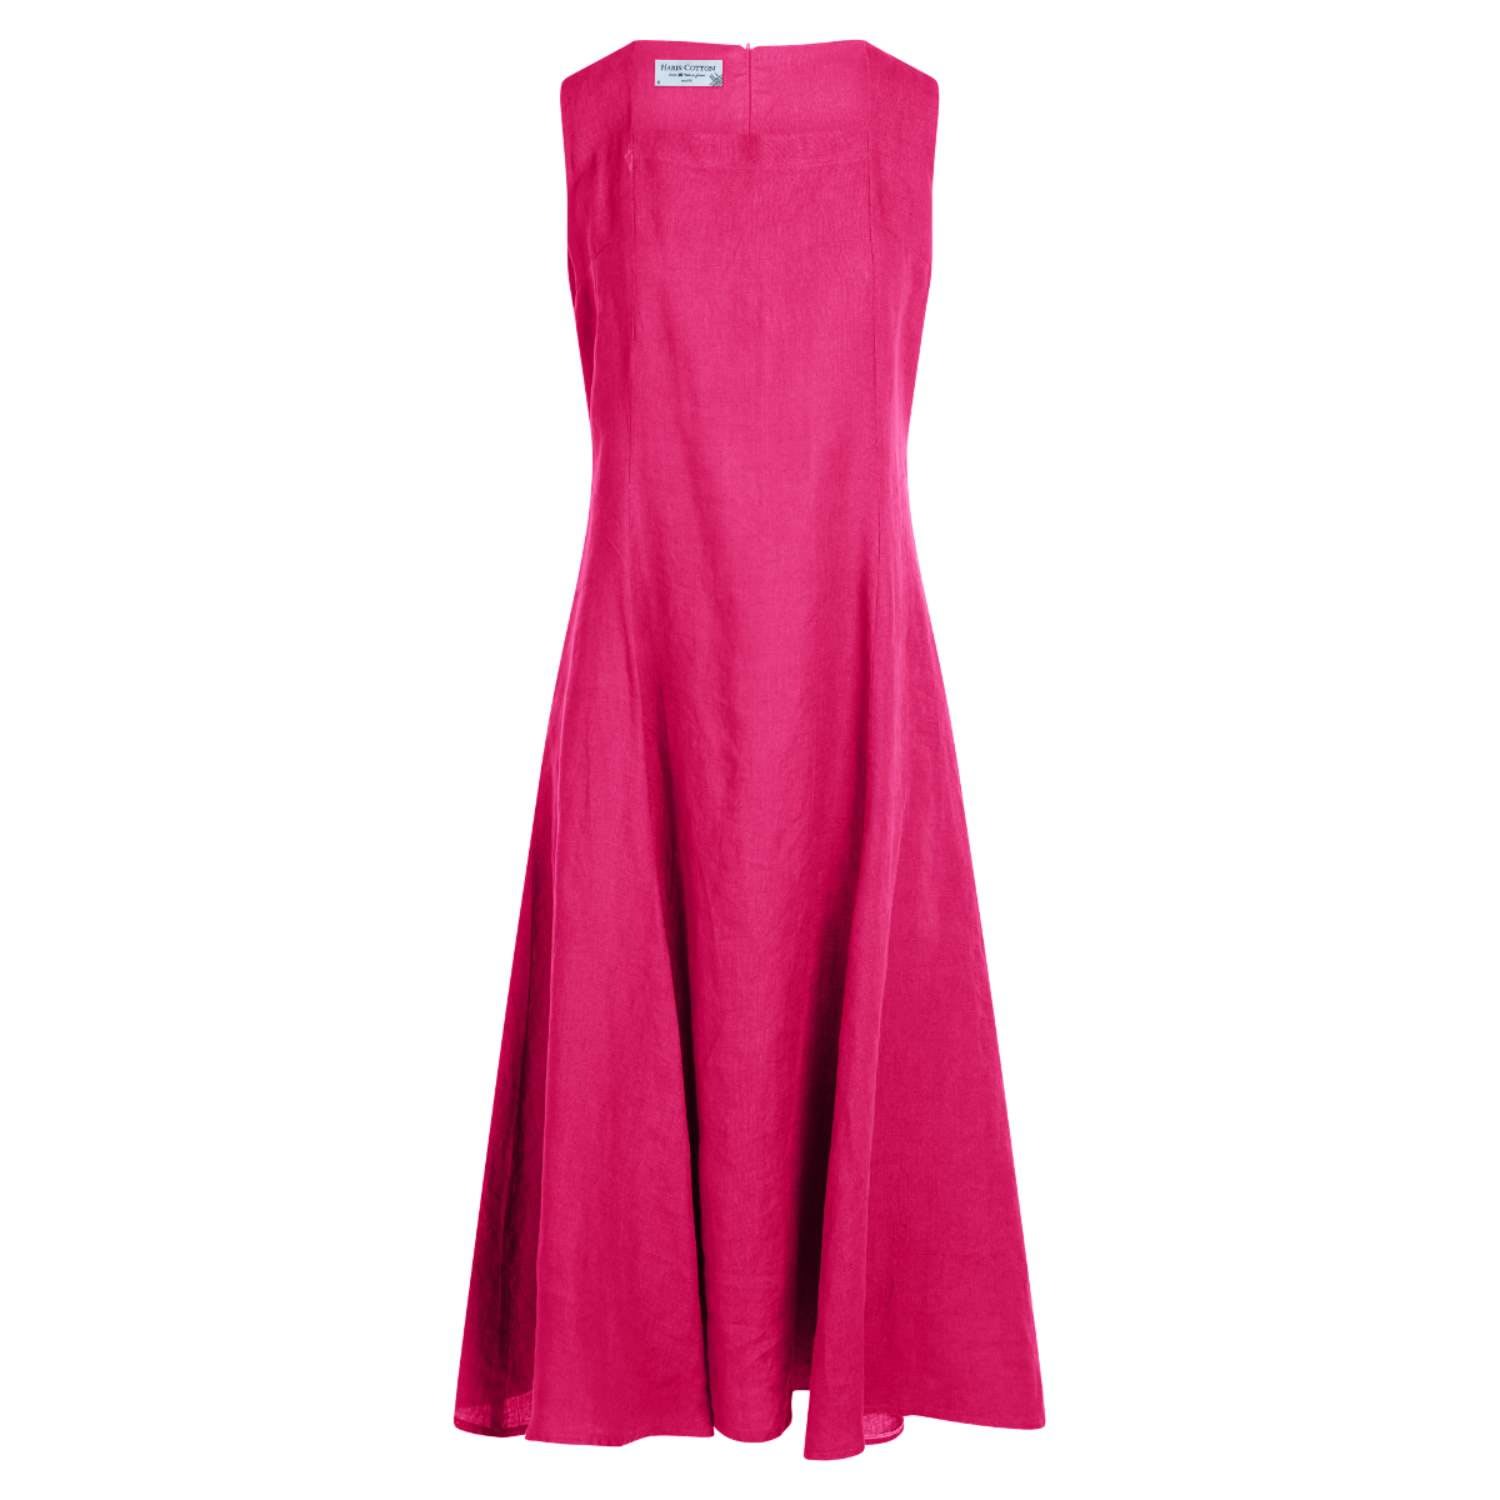 Haris Cotton Women's Pink / Purple Square Neckline Flared Linen Midi Dress- Fuchsia